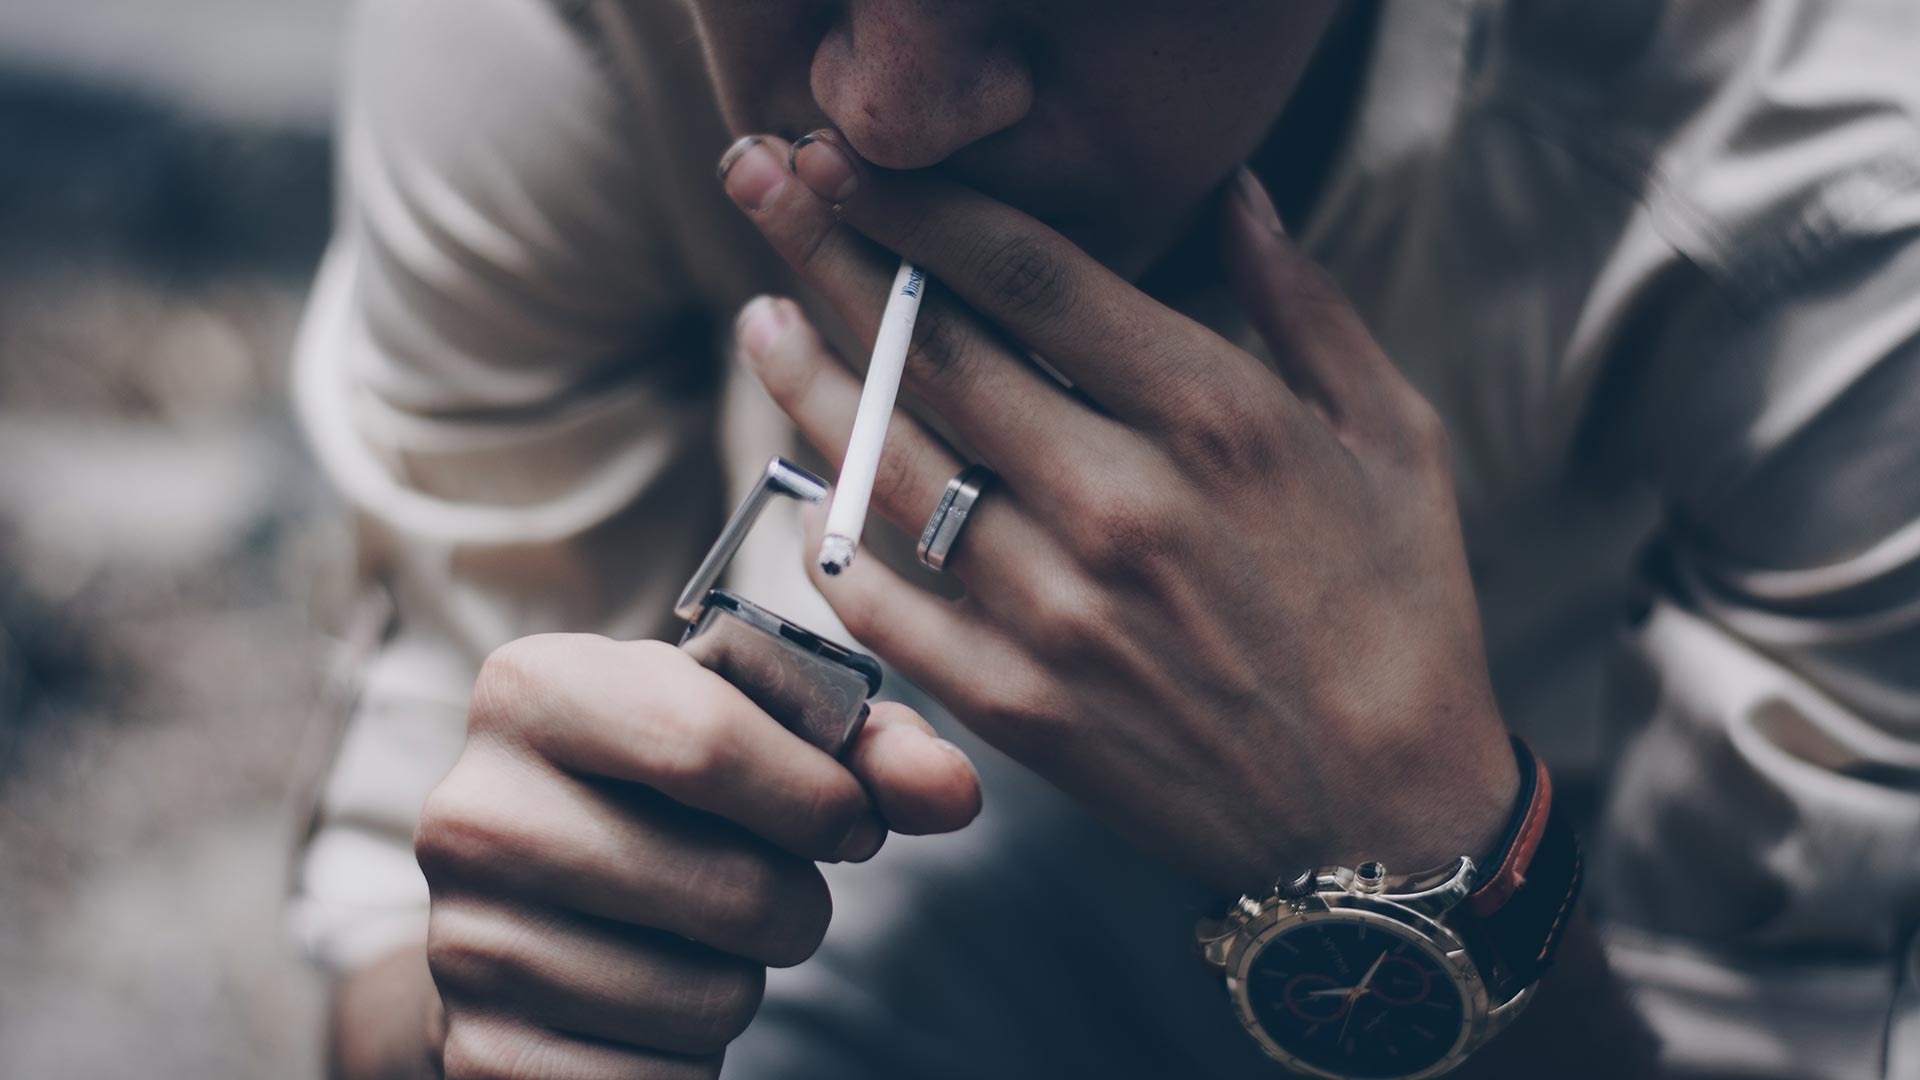 EEUU eleva de 18 a 21 años la edad mínima para comprar tabaco y cigarrillos electrónicos